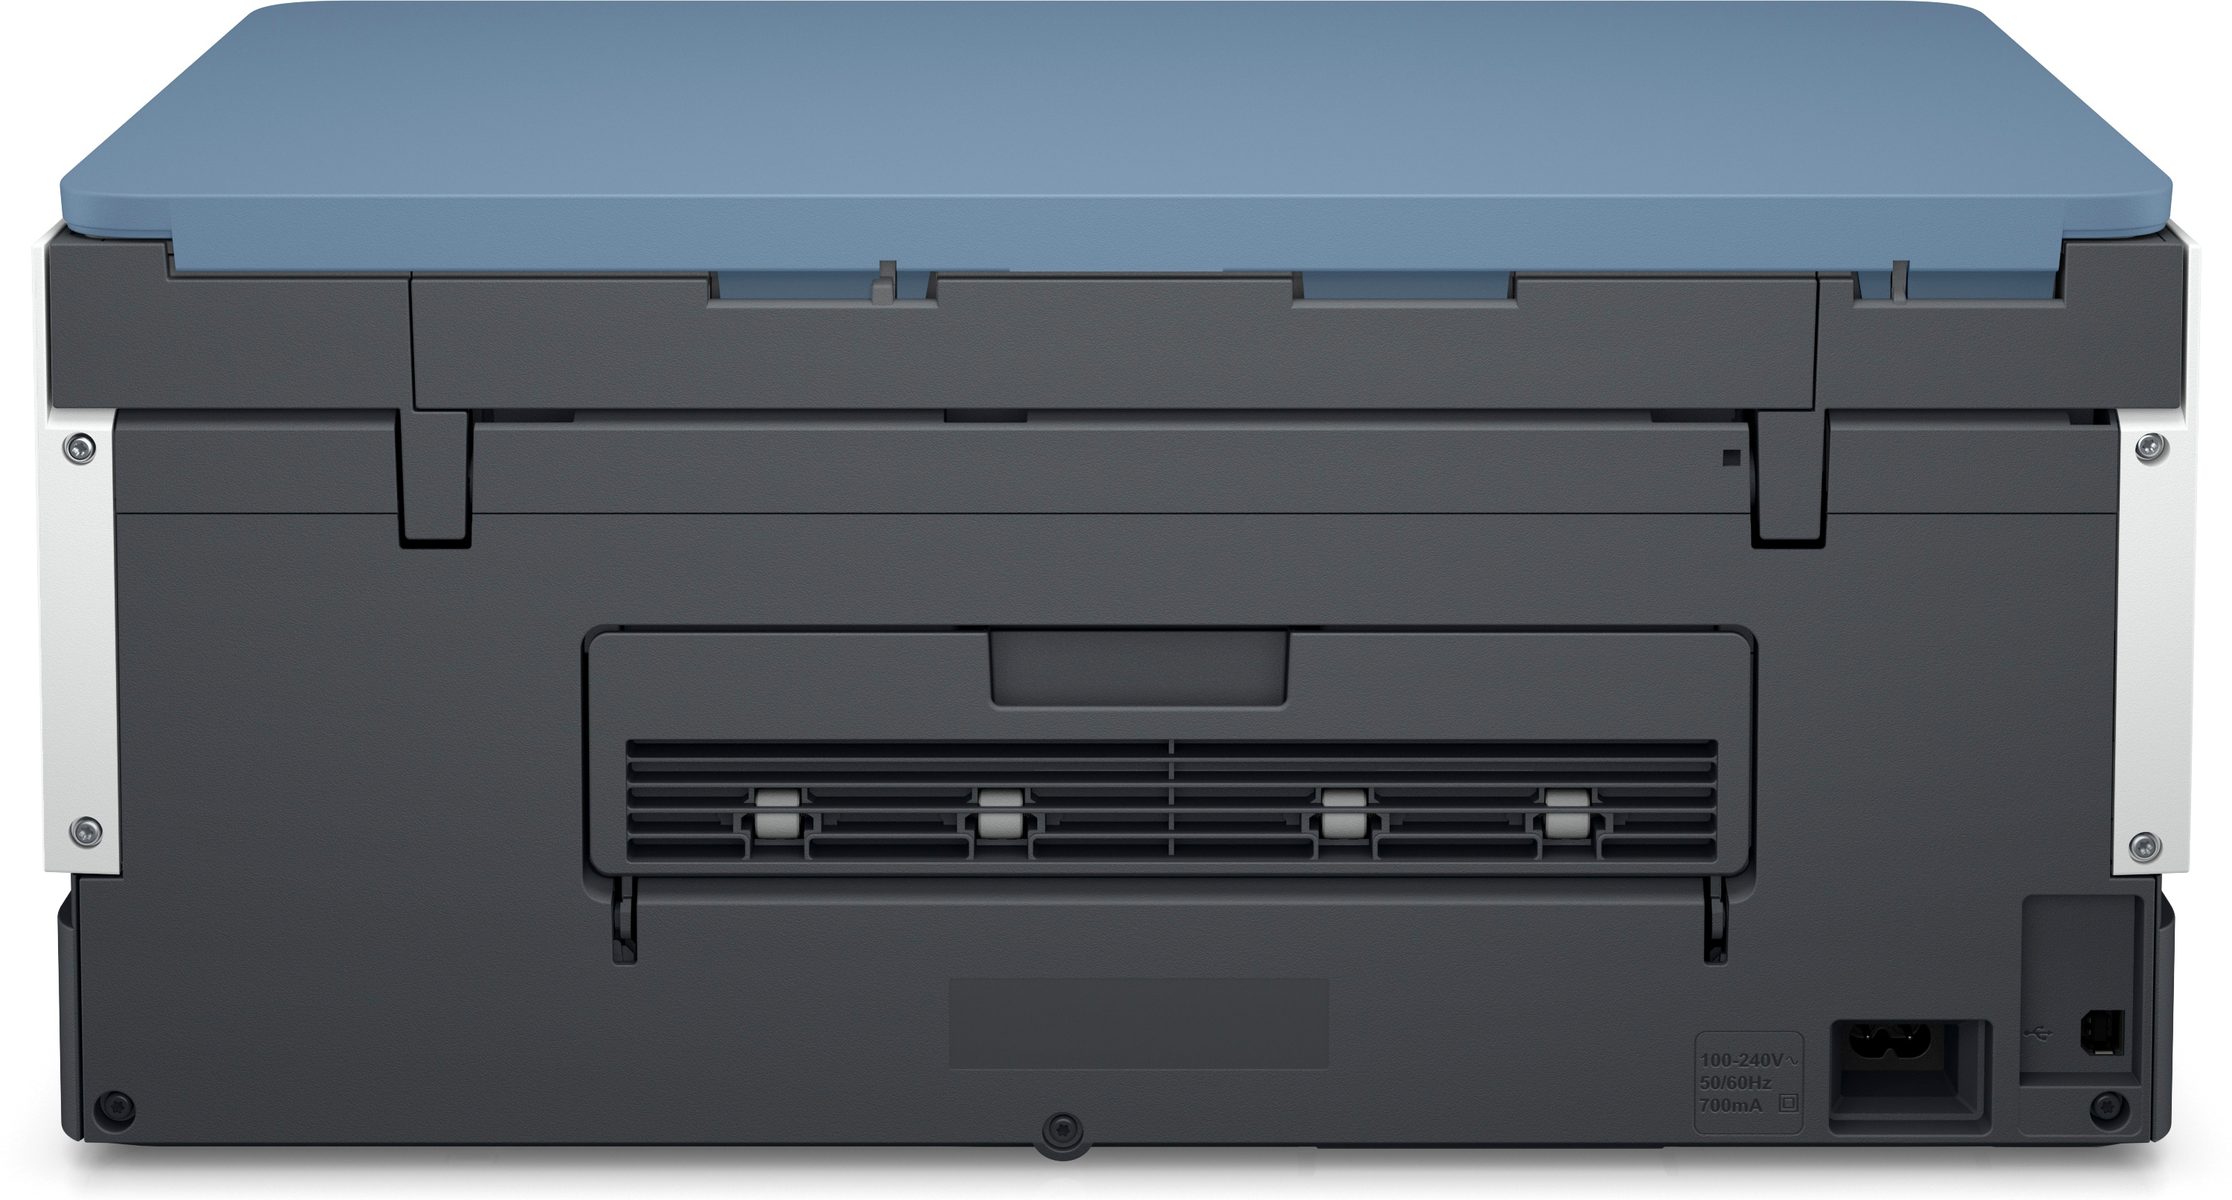 HP Inkjet Multifunktionsdrucker WLAN 28B55A